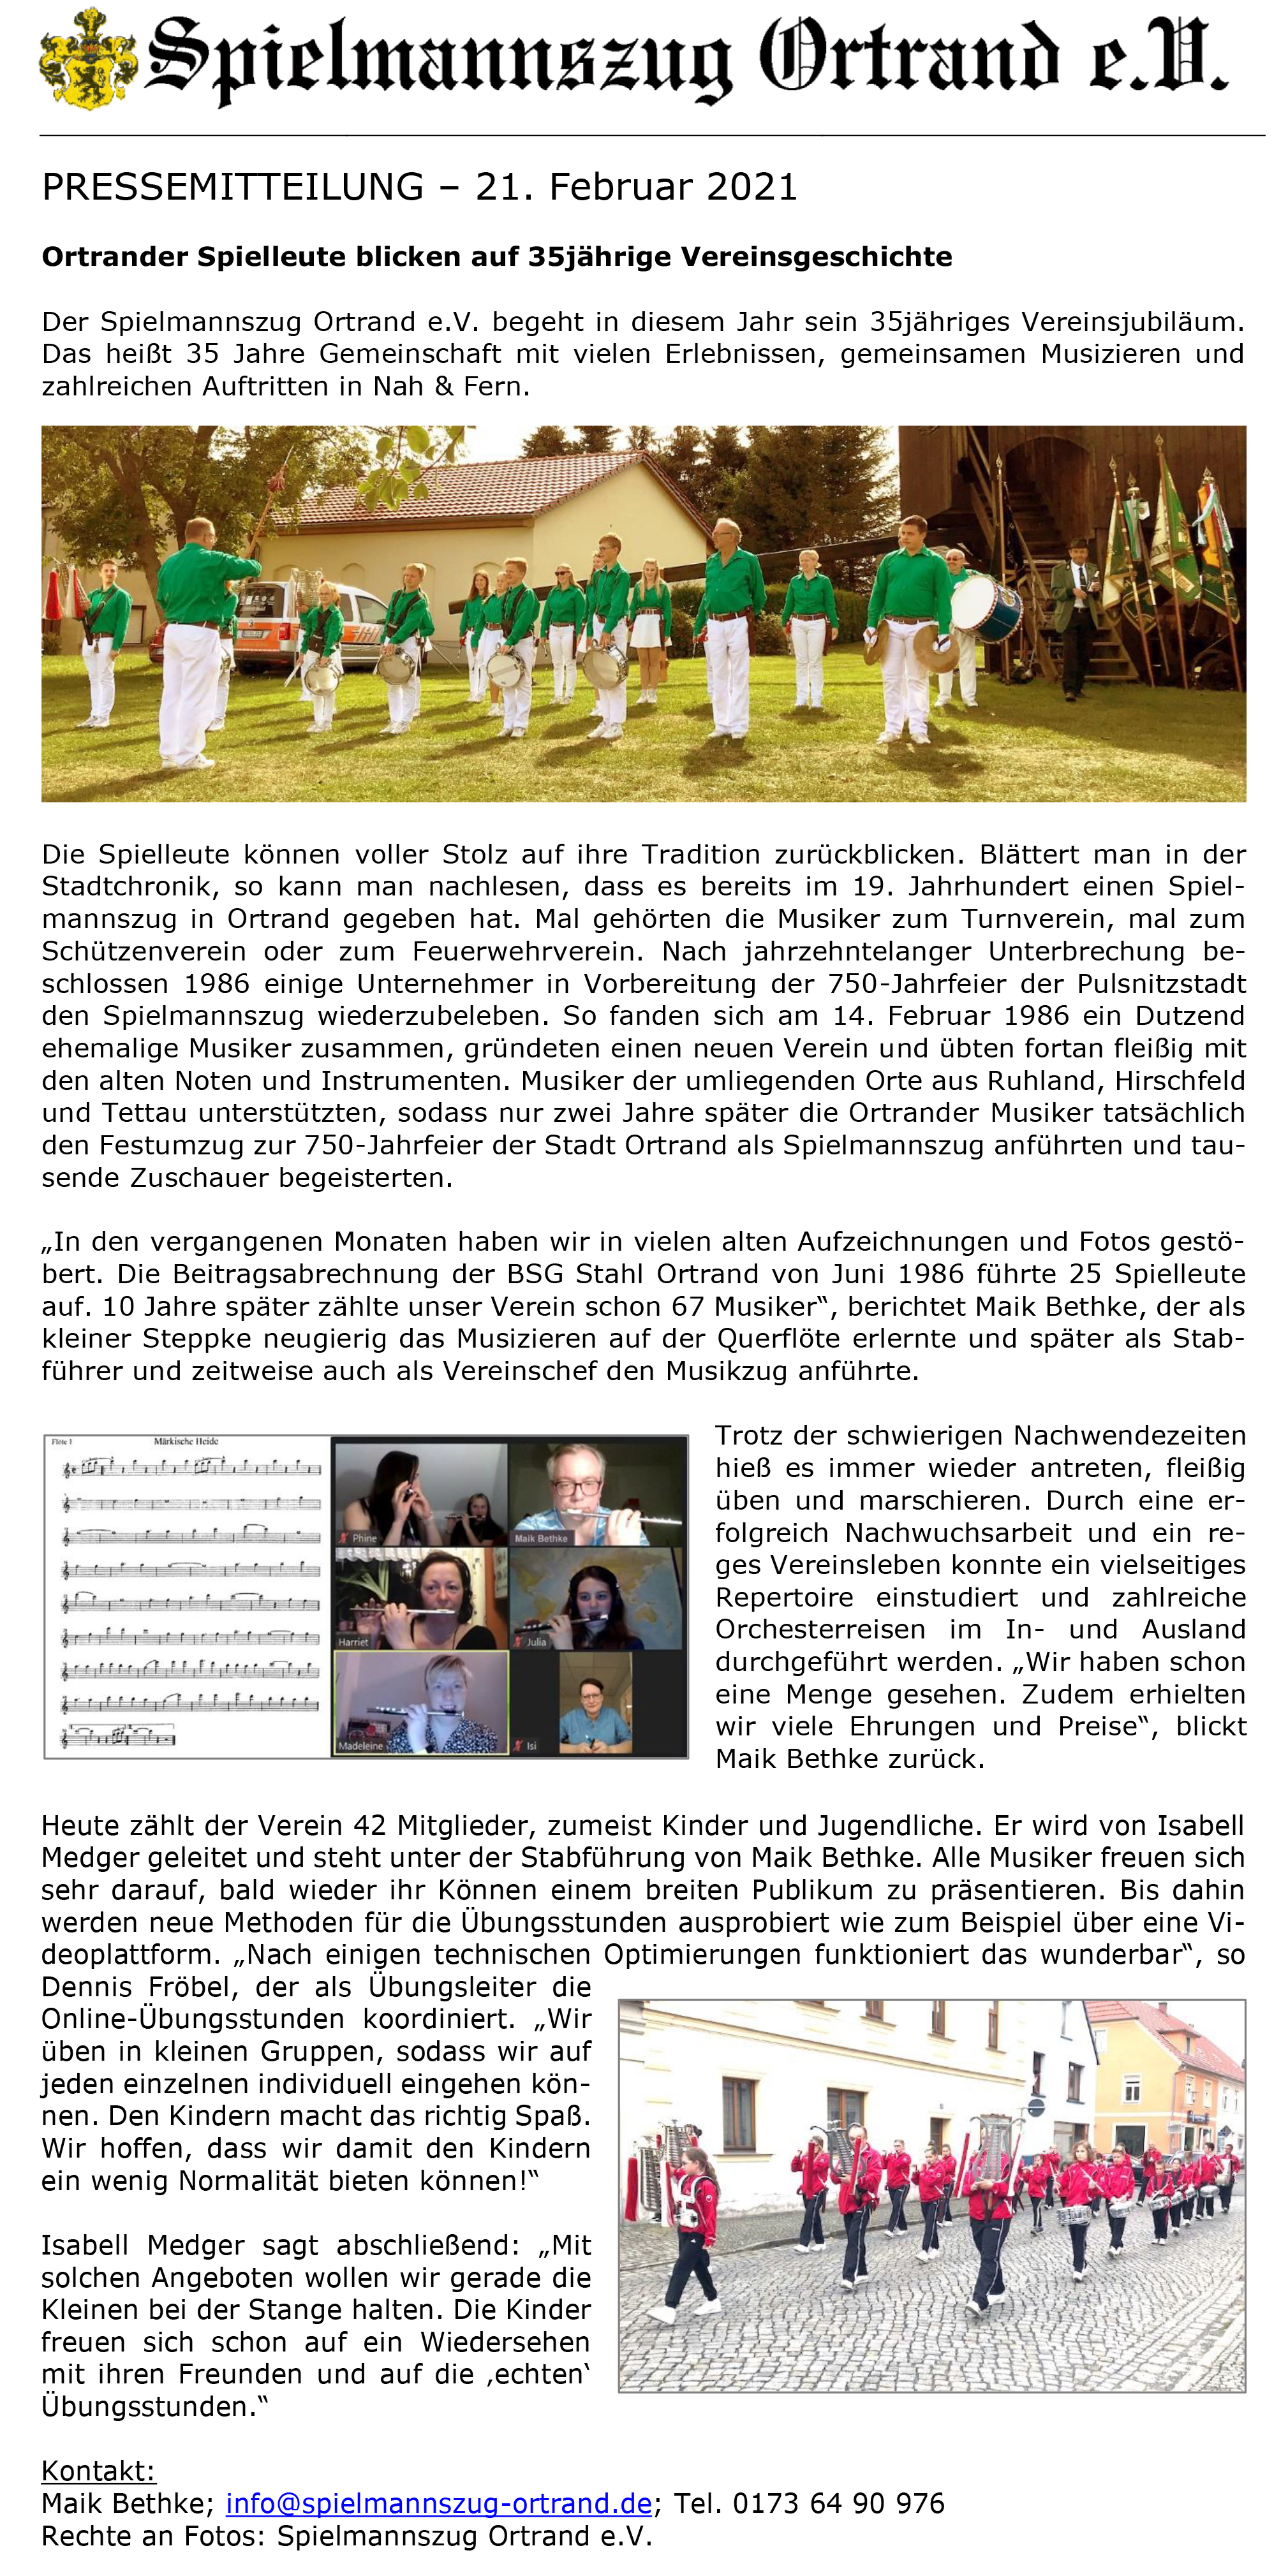 Pressemitteilung Spielmannszug Ortrand 21.02.2021